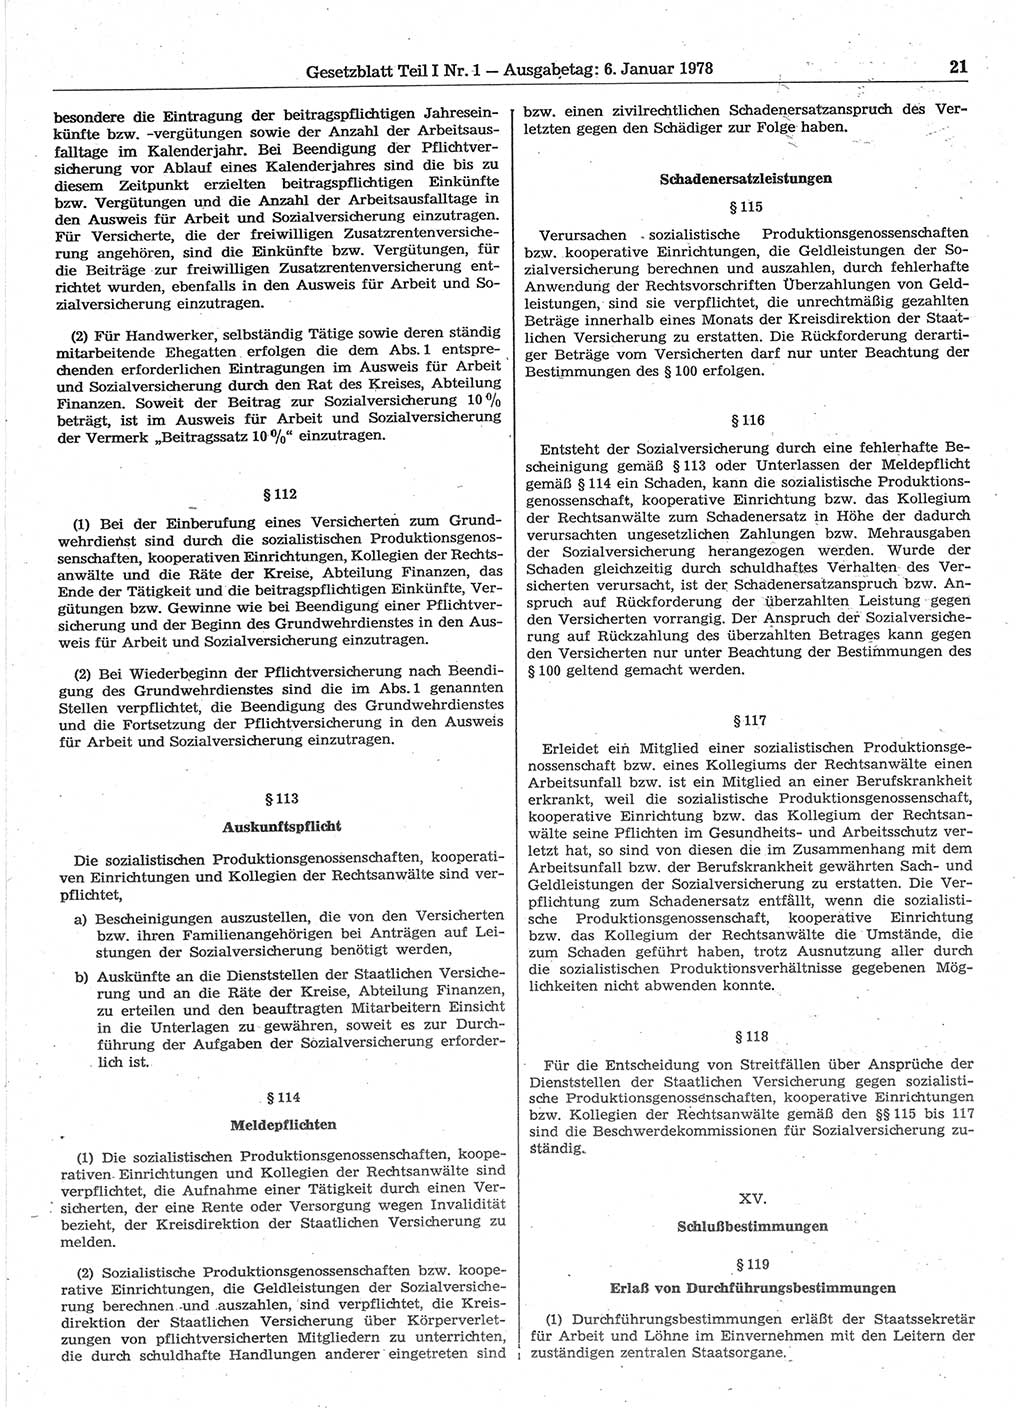 Gesetzblatt (GBl.) der Deutschen Demokratischen Republik (DDR) Teil Ⅰ 1978, Seite 21 (GBl. DDR Ⅰ 1978, S. 21)